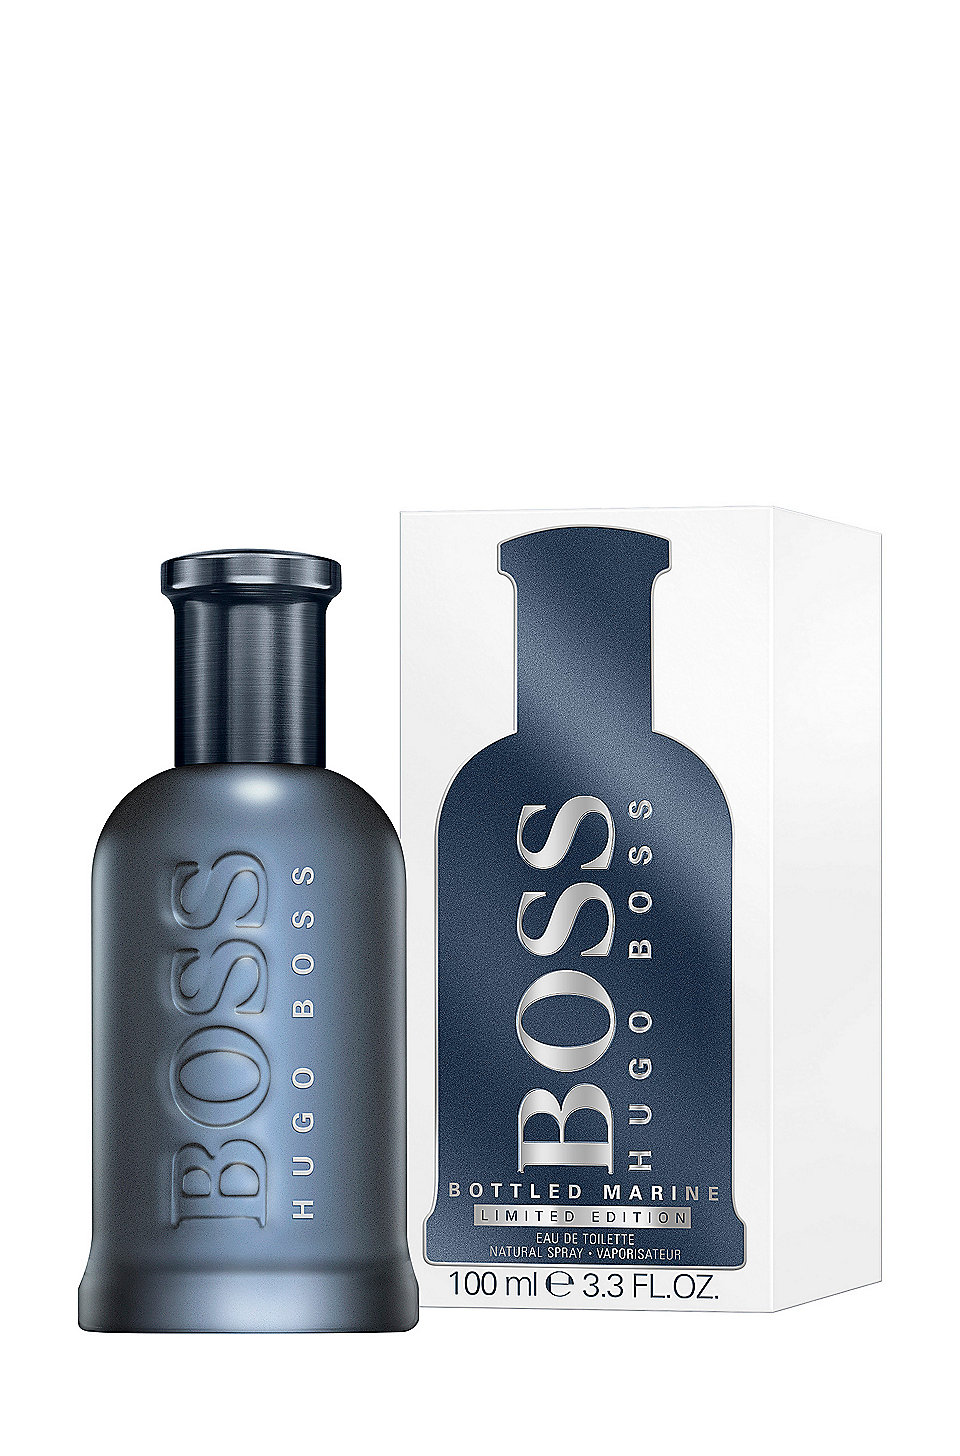 Hugo Boss Bottled Man Of Today 100ml | lupon.gov.ph